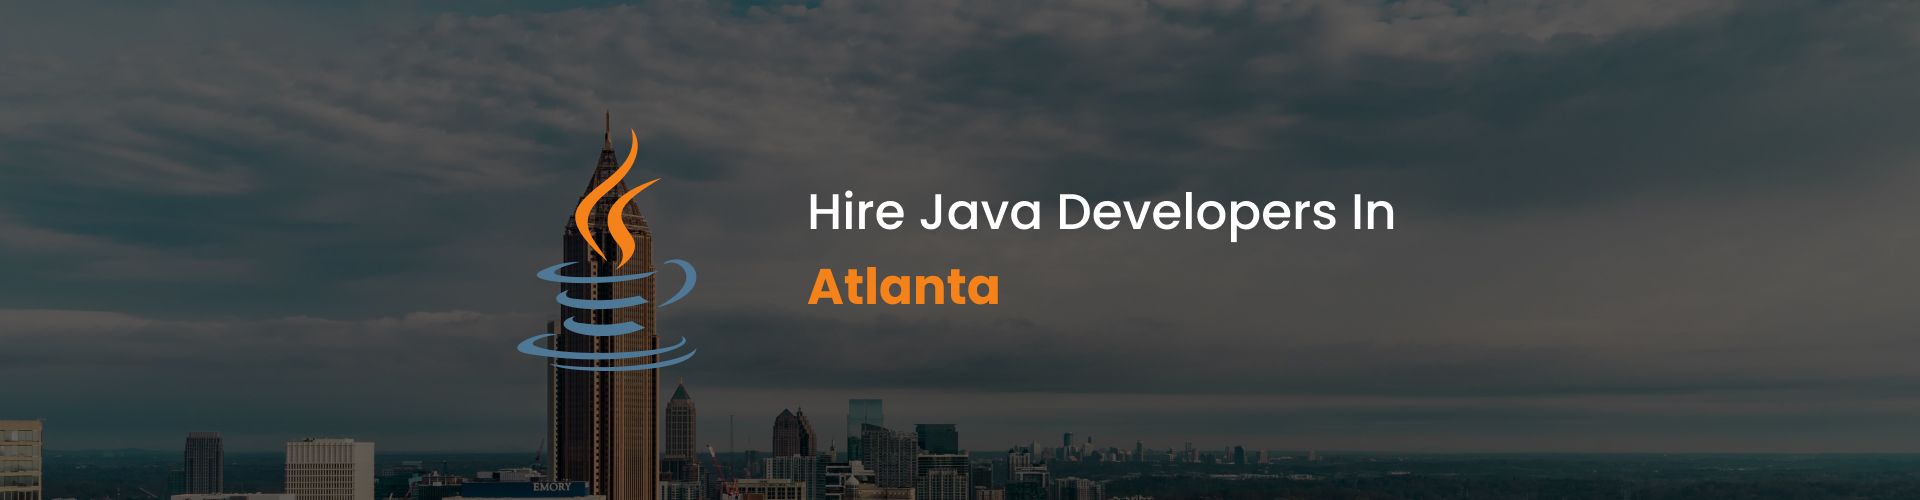 hire java developers in atlanta